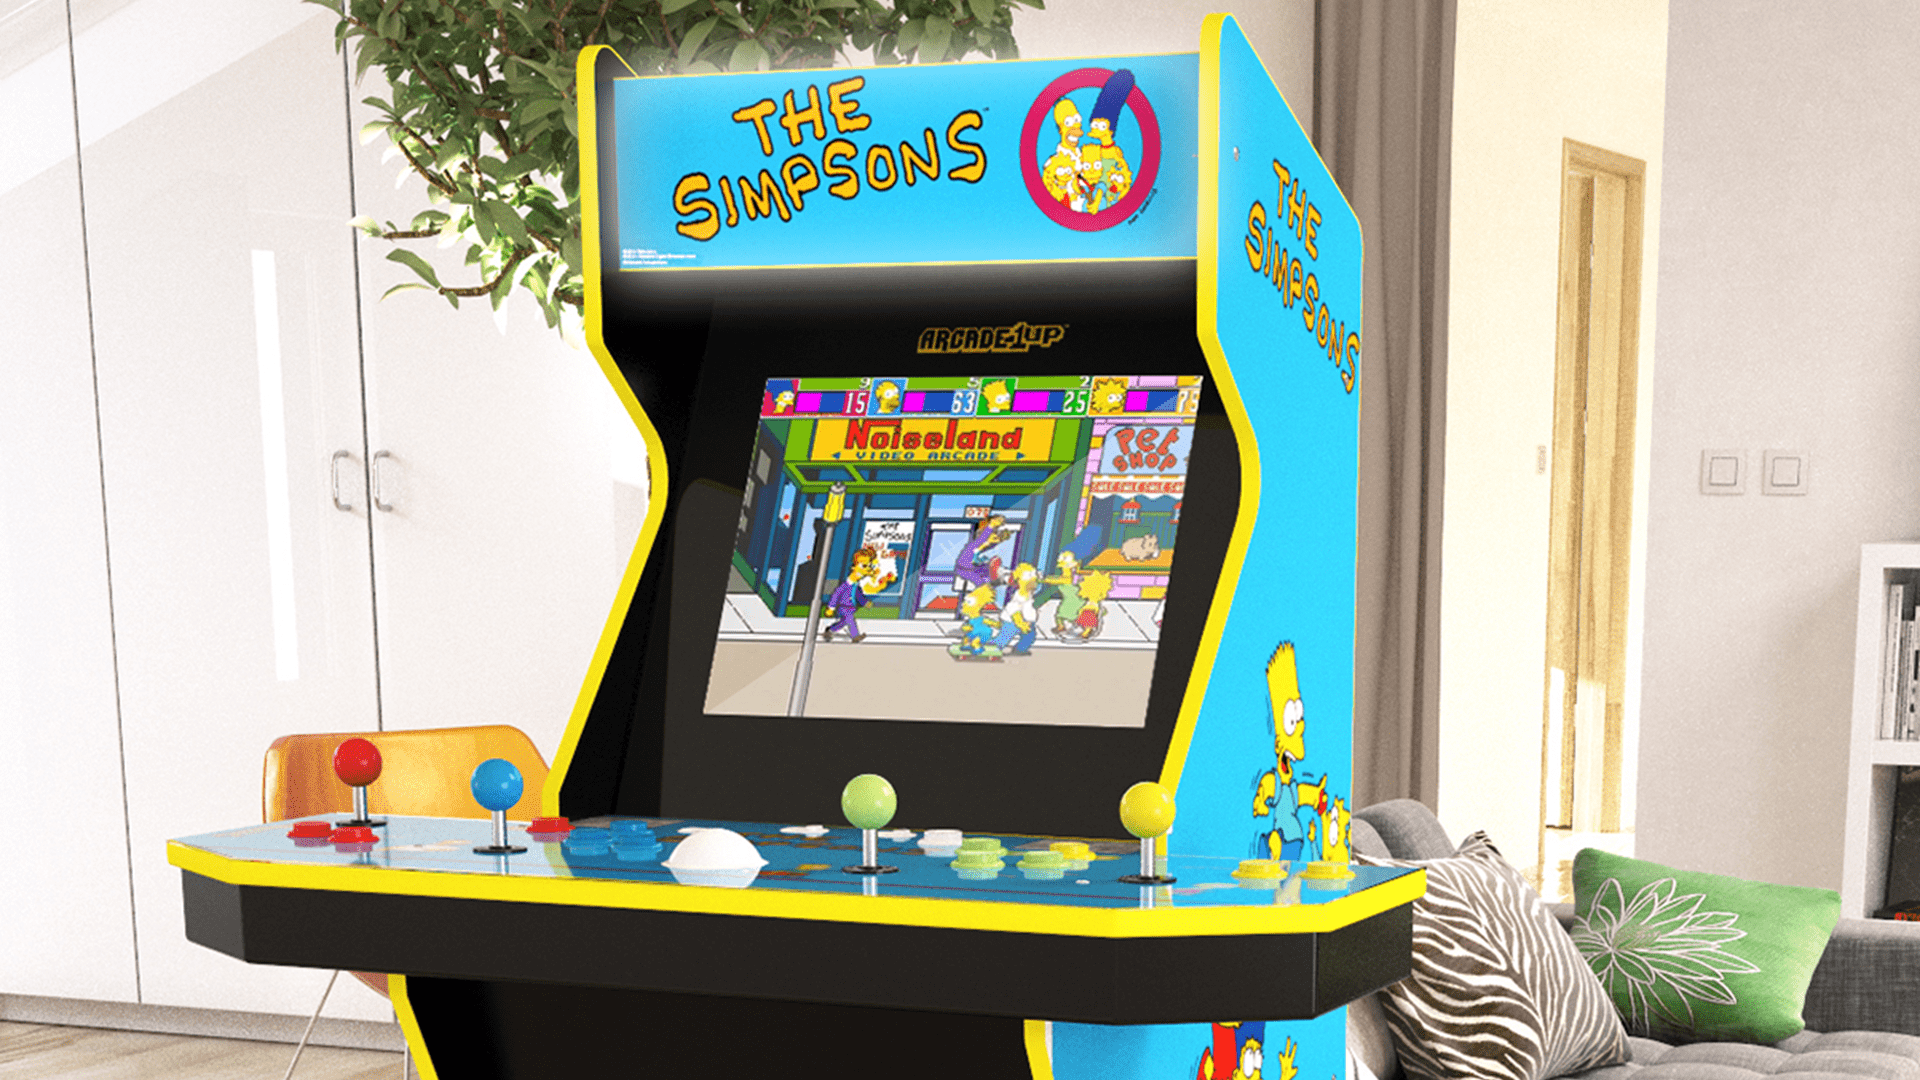 Arcade1Up åker till Springfield med det nya “The Simpsons”-videospelet